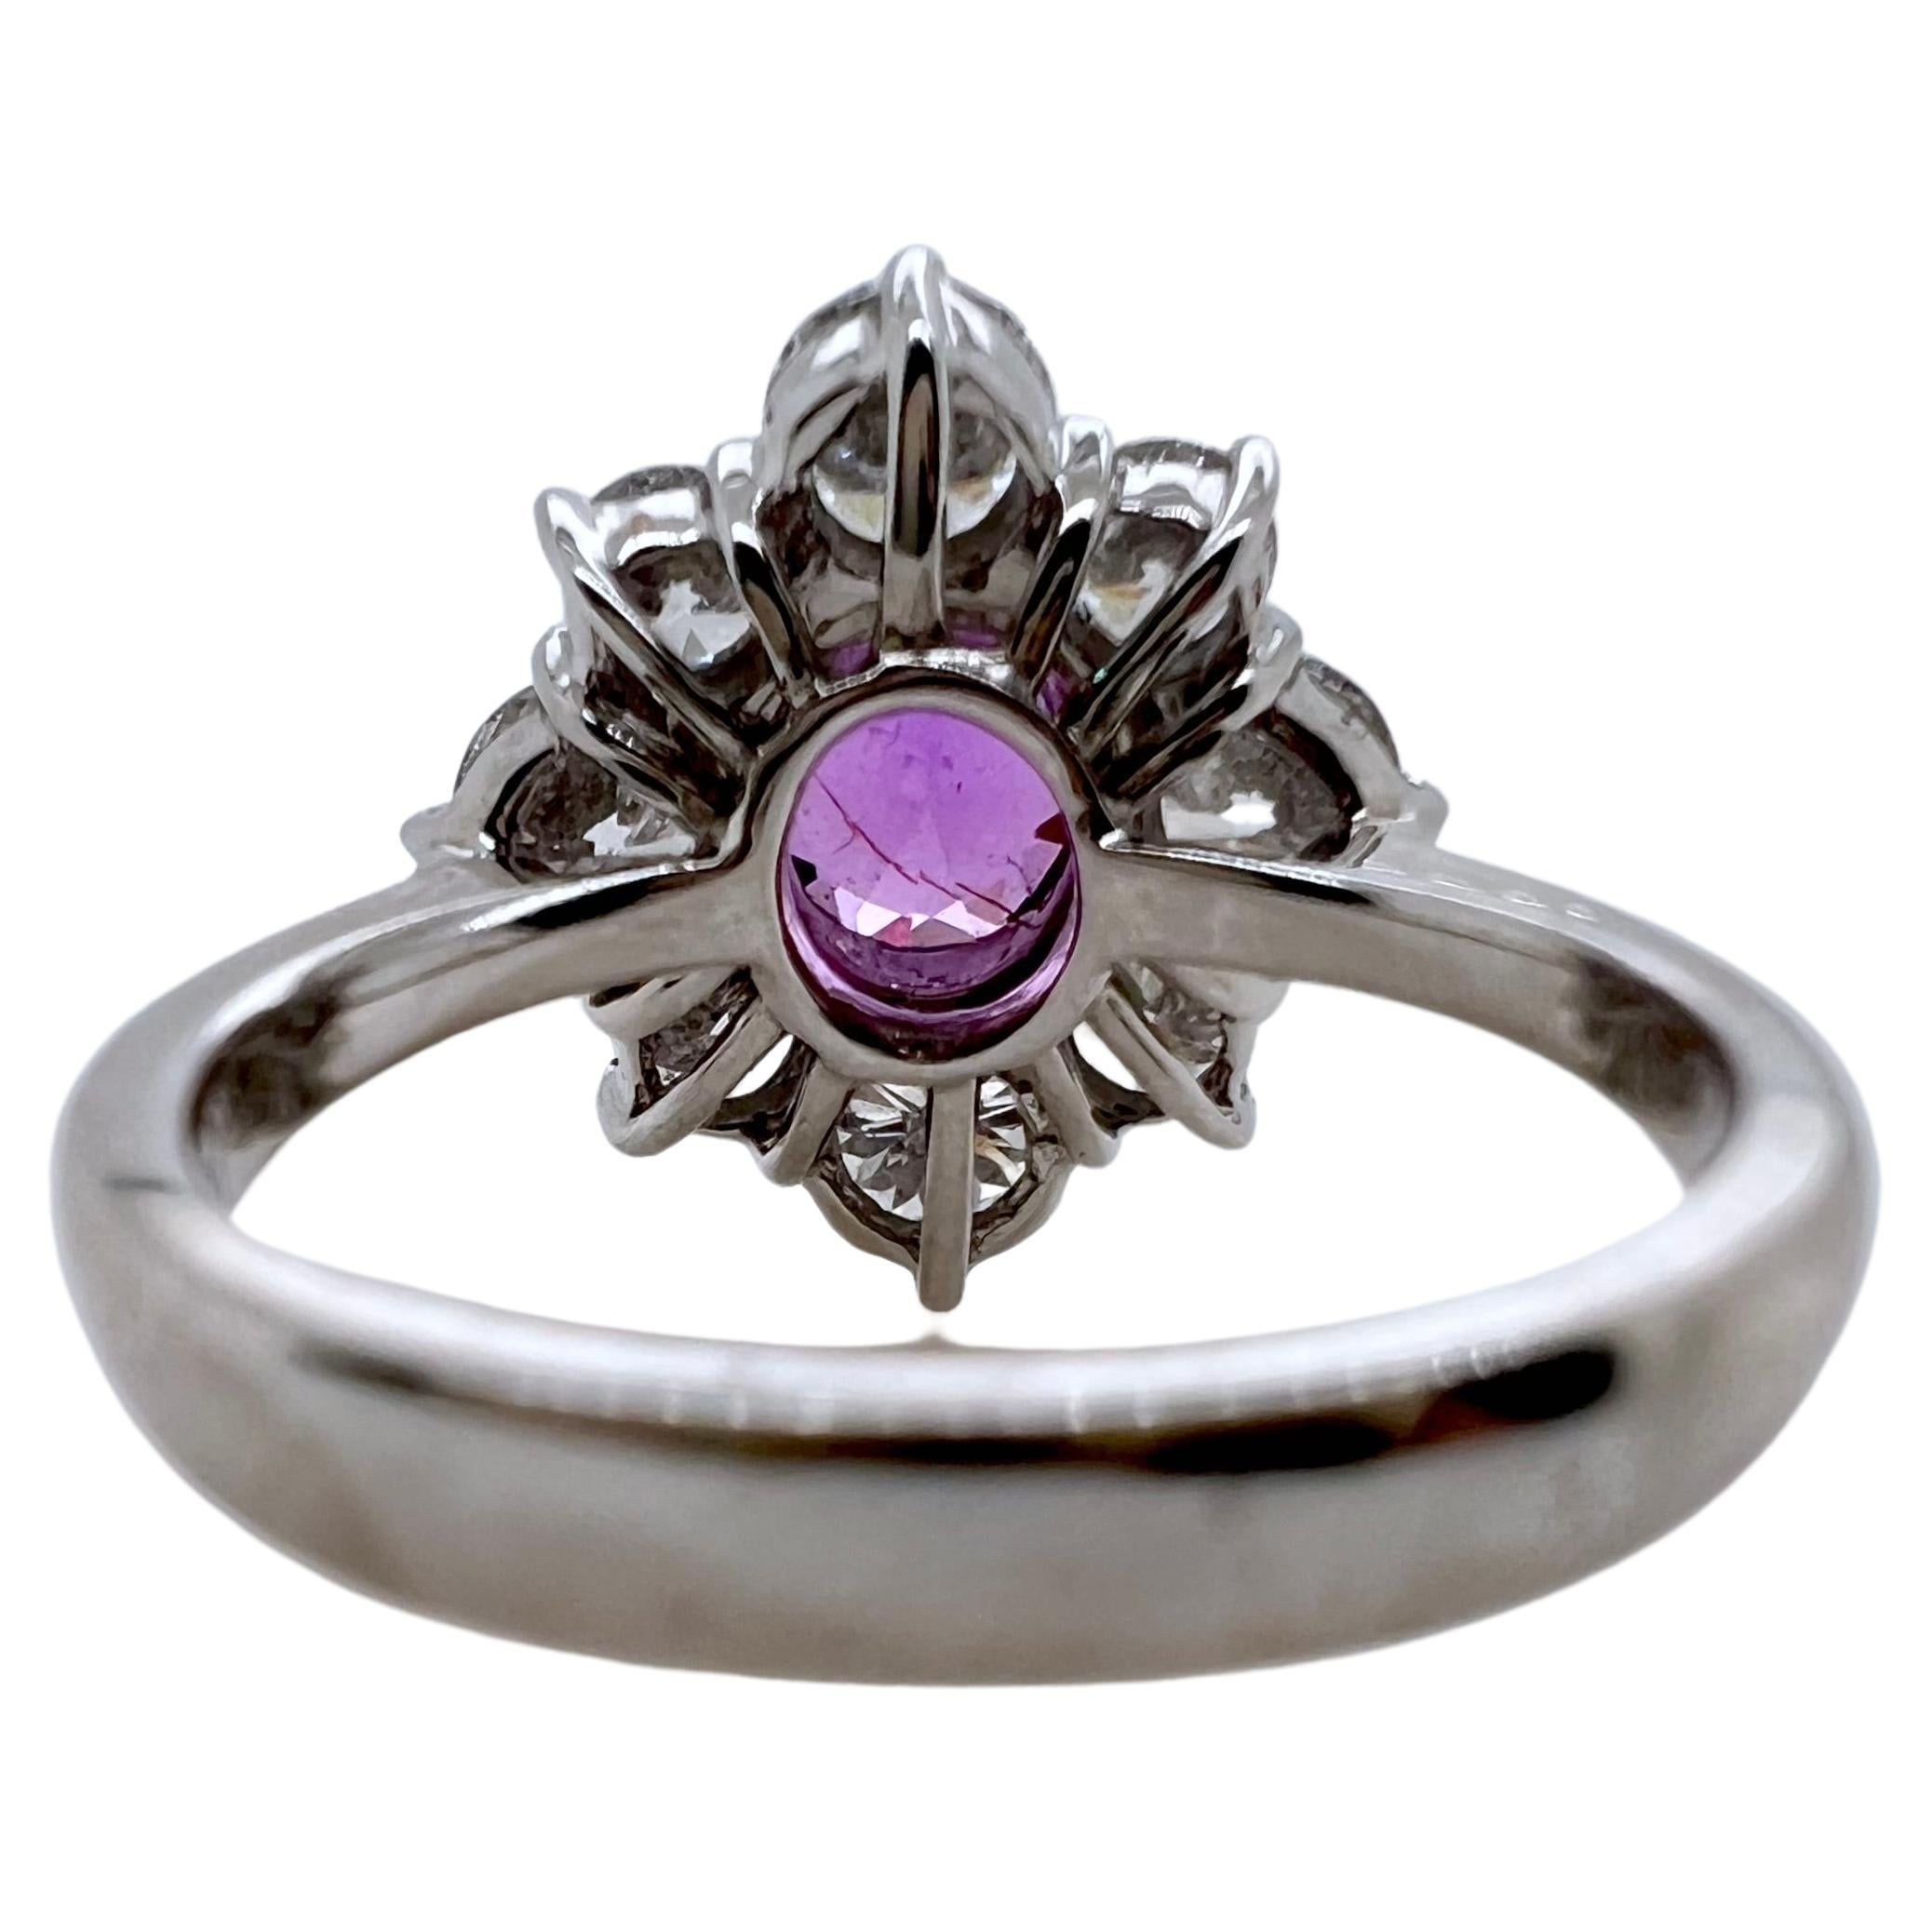 Ce magnifique saphir violet est serti dans une monture de diamants en or blanc 19k faite à la main.  Le saphir est certifié GIA et n'a pas été chauffé.  Le magnifique ton de couleur contre les diamants brillants et éclatants le fait ressortir et